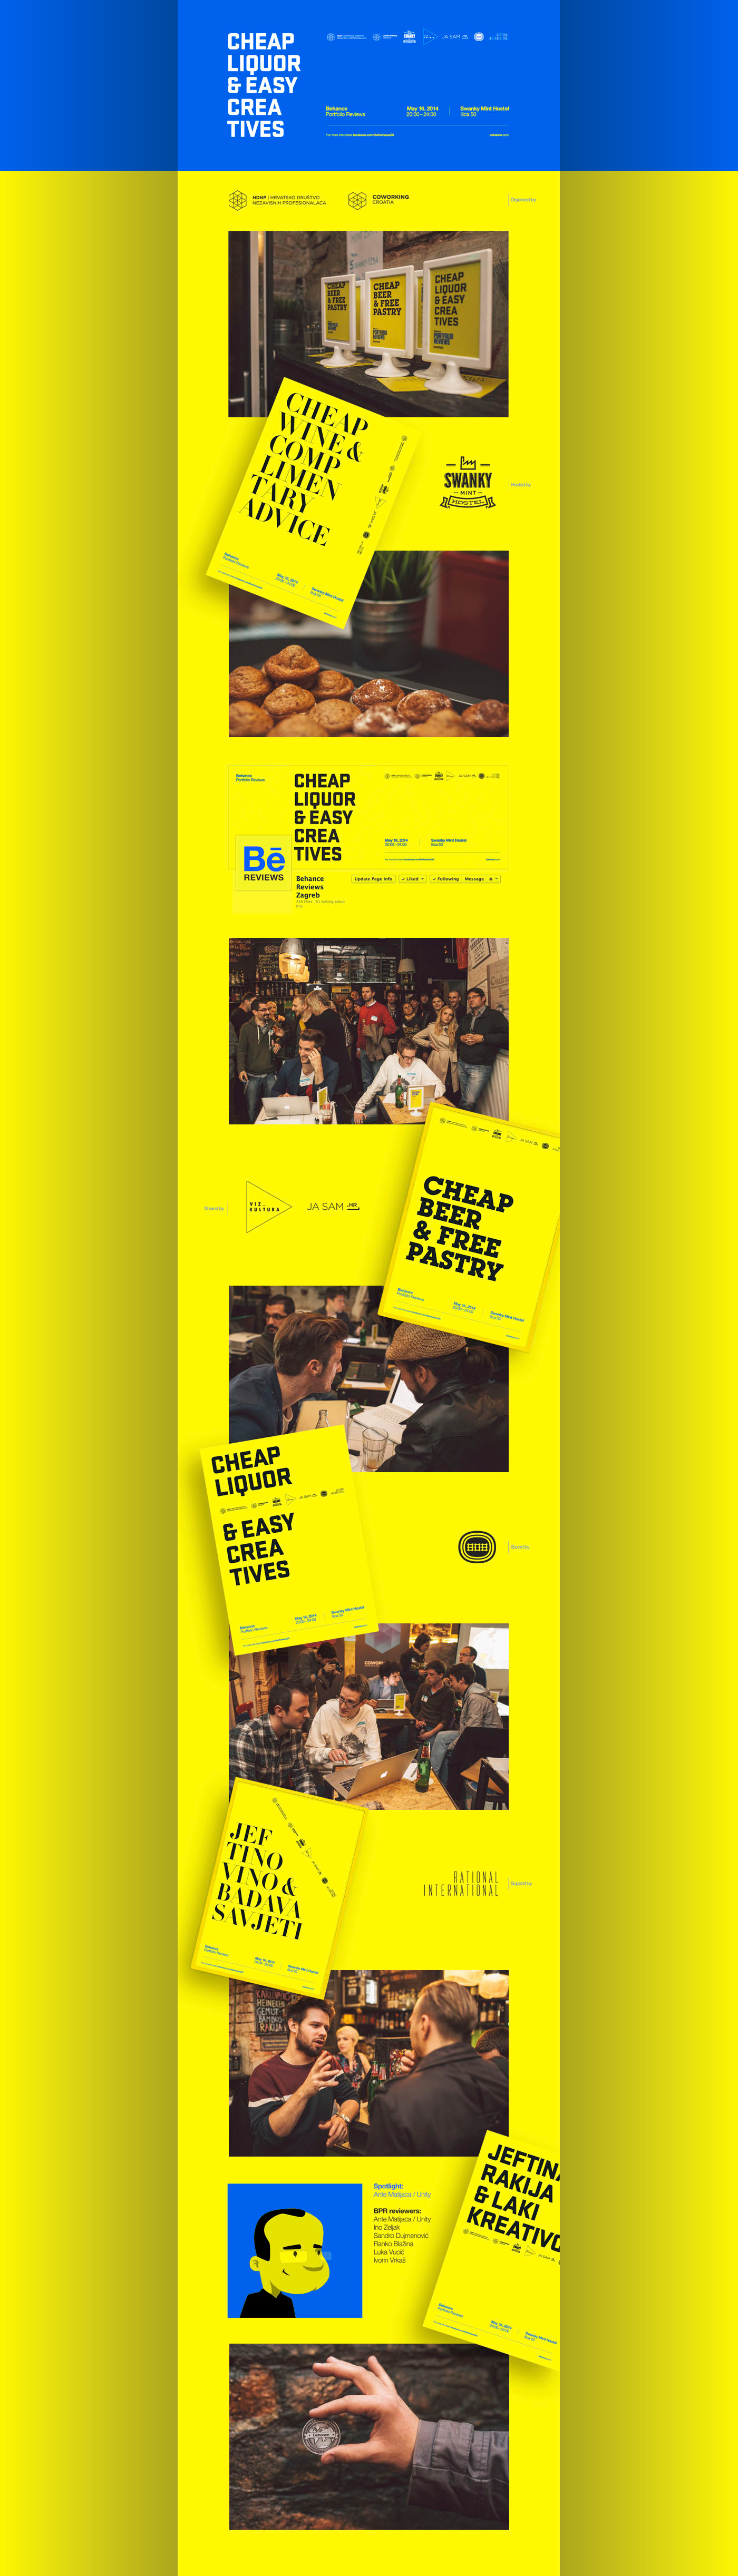 Behance portfolio Croatia Zagreb review yellow type copy beer wine advice Logotype design Event